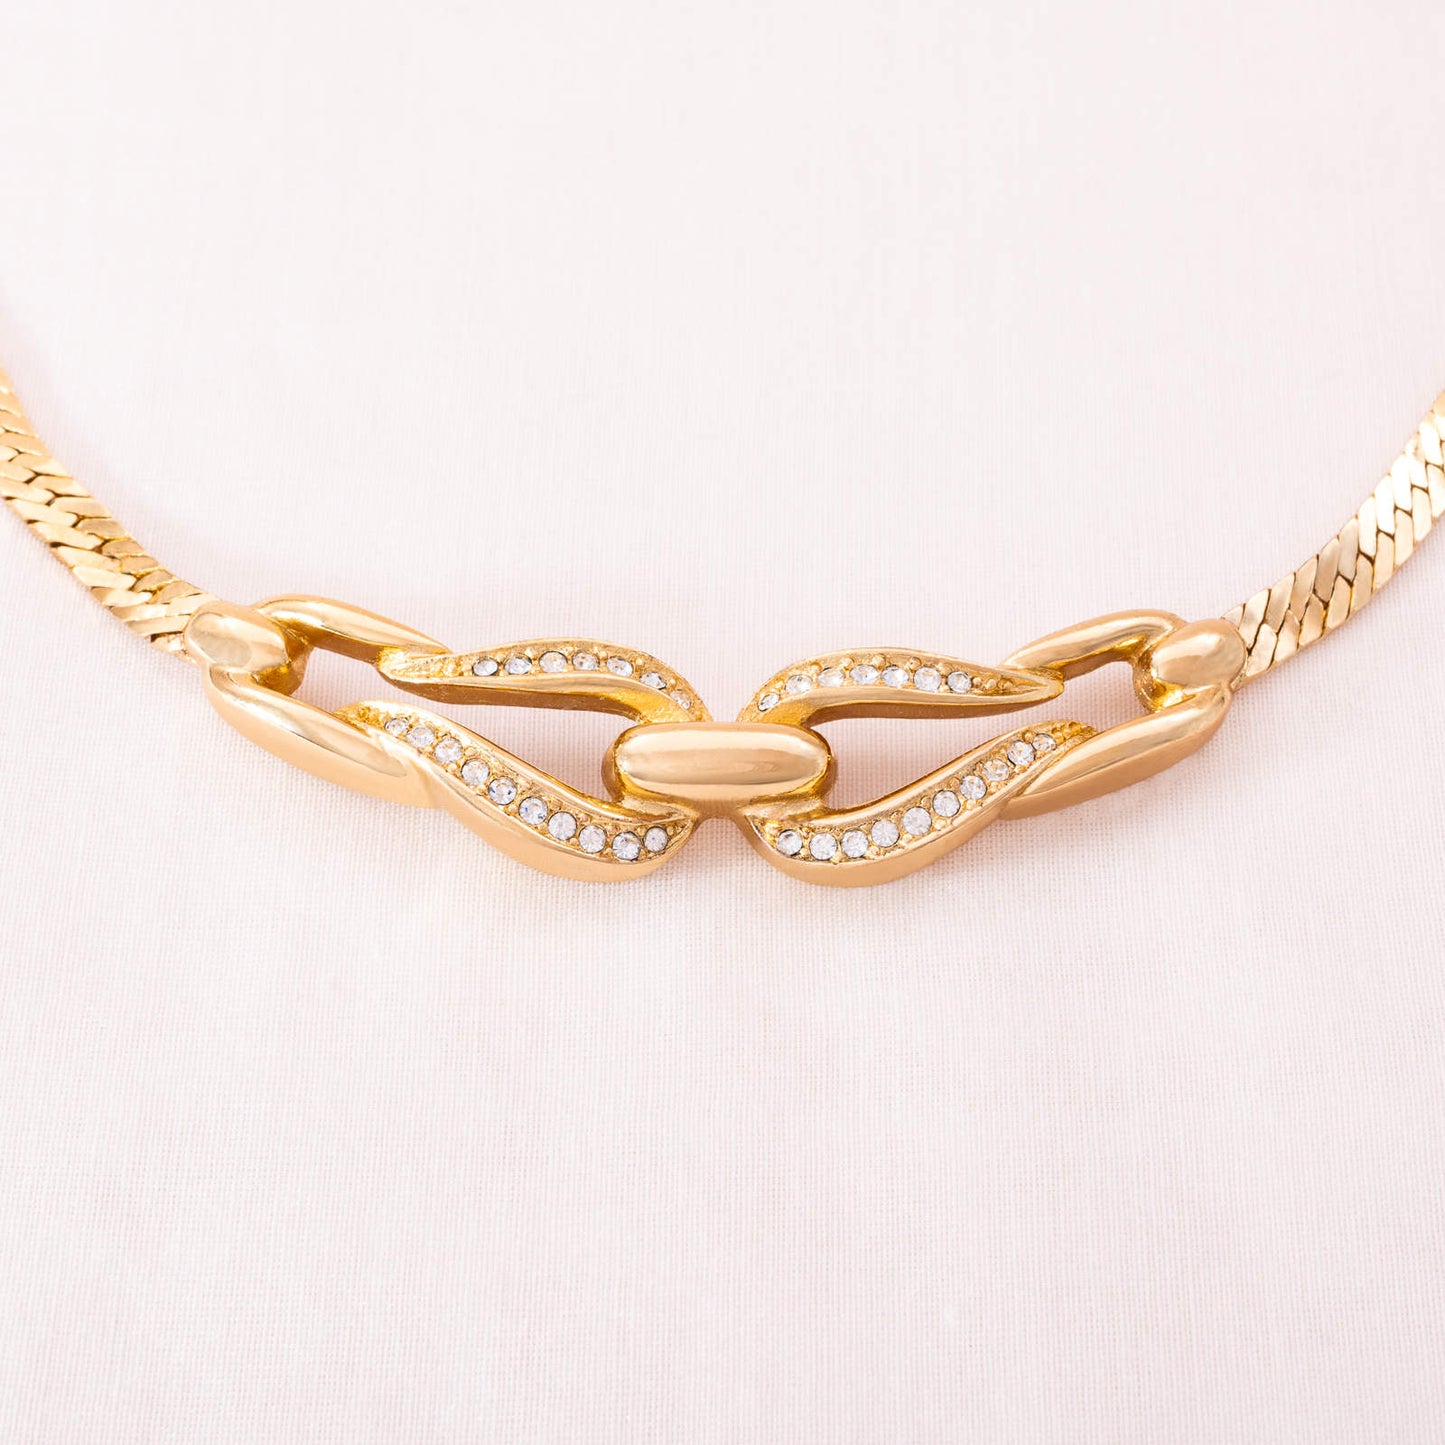 Christian-Dior-klassische-Halskette-vergoldet-mit-Kristallen-besetzt